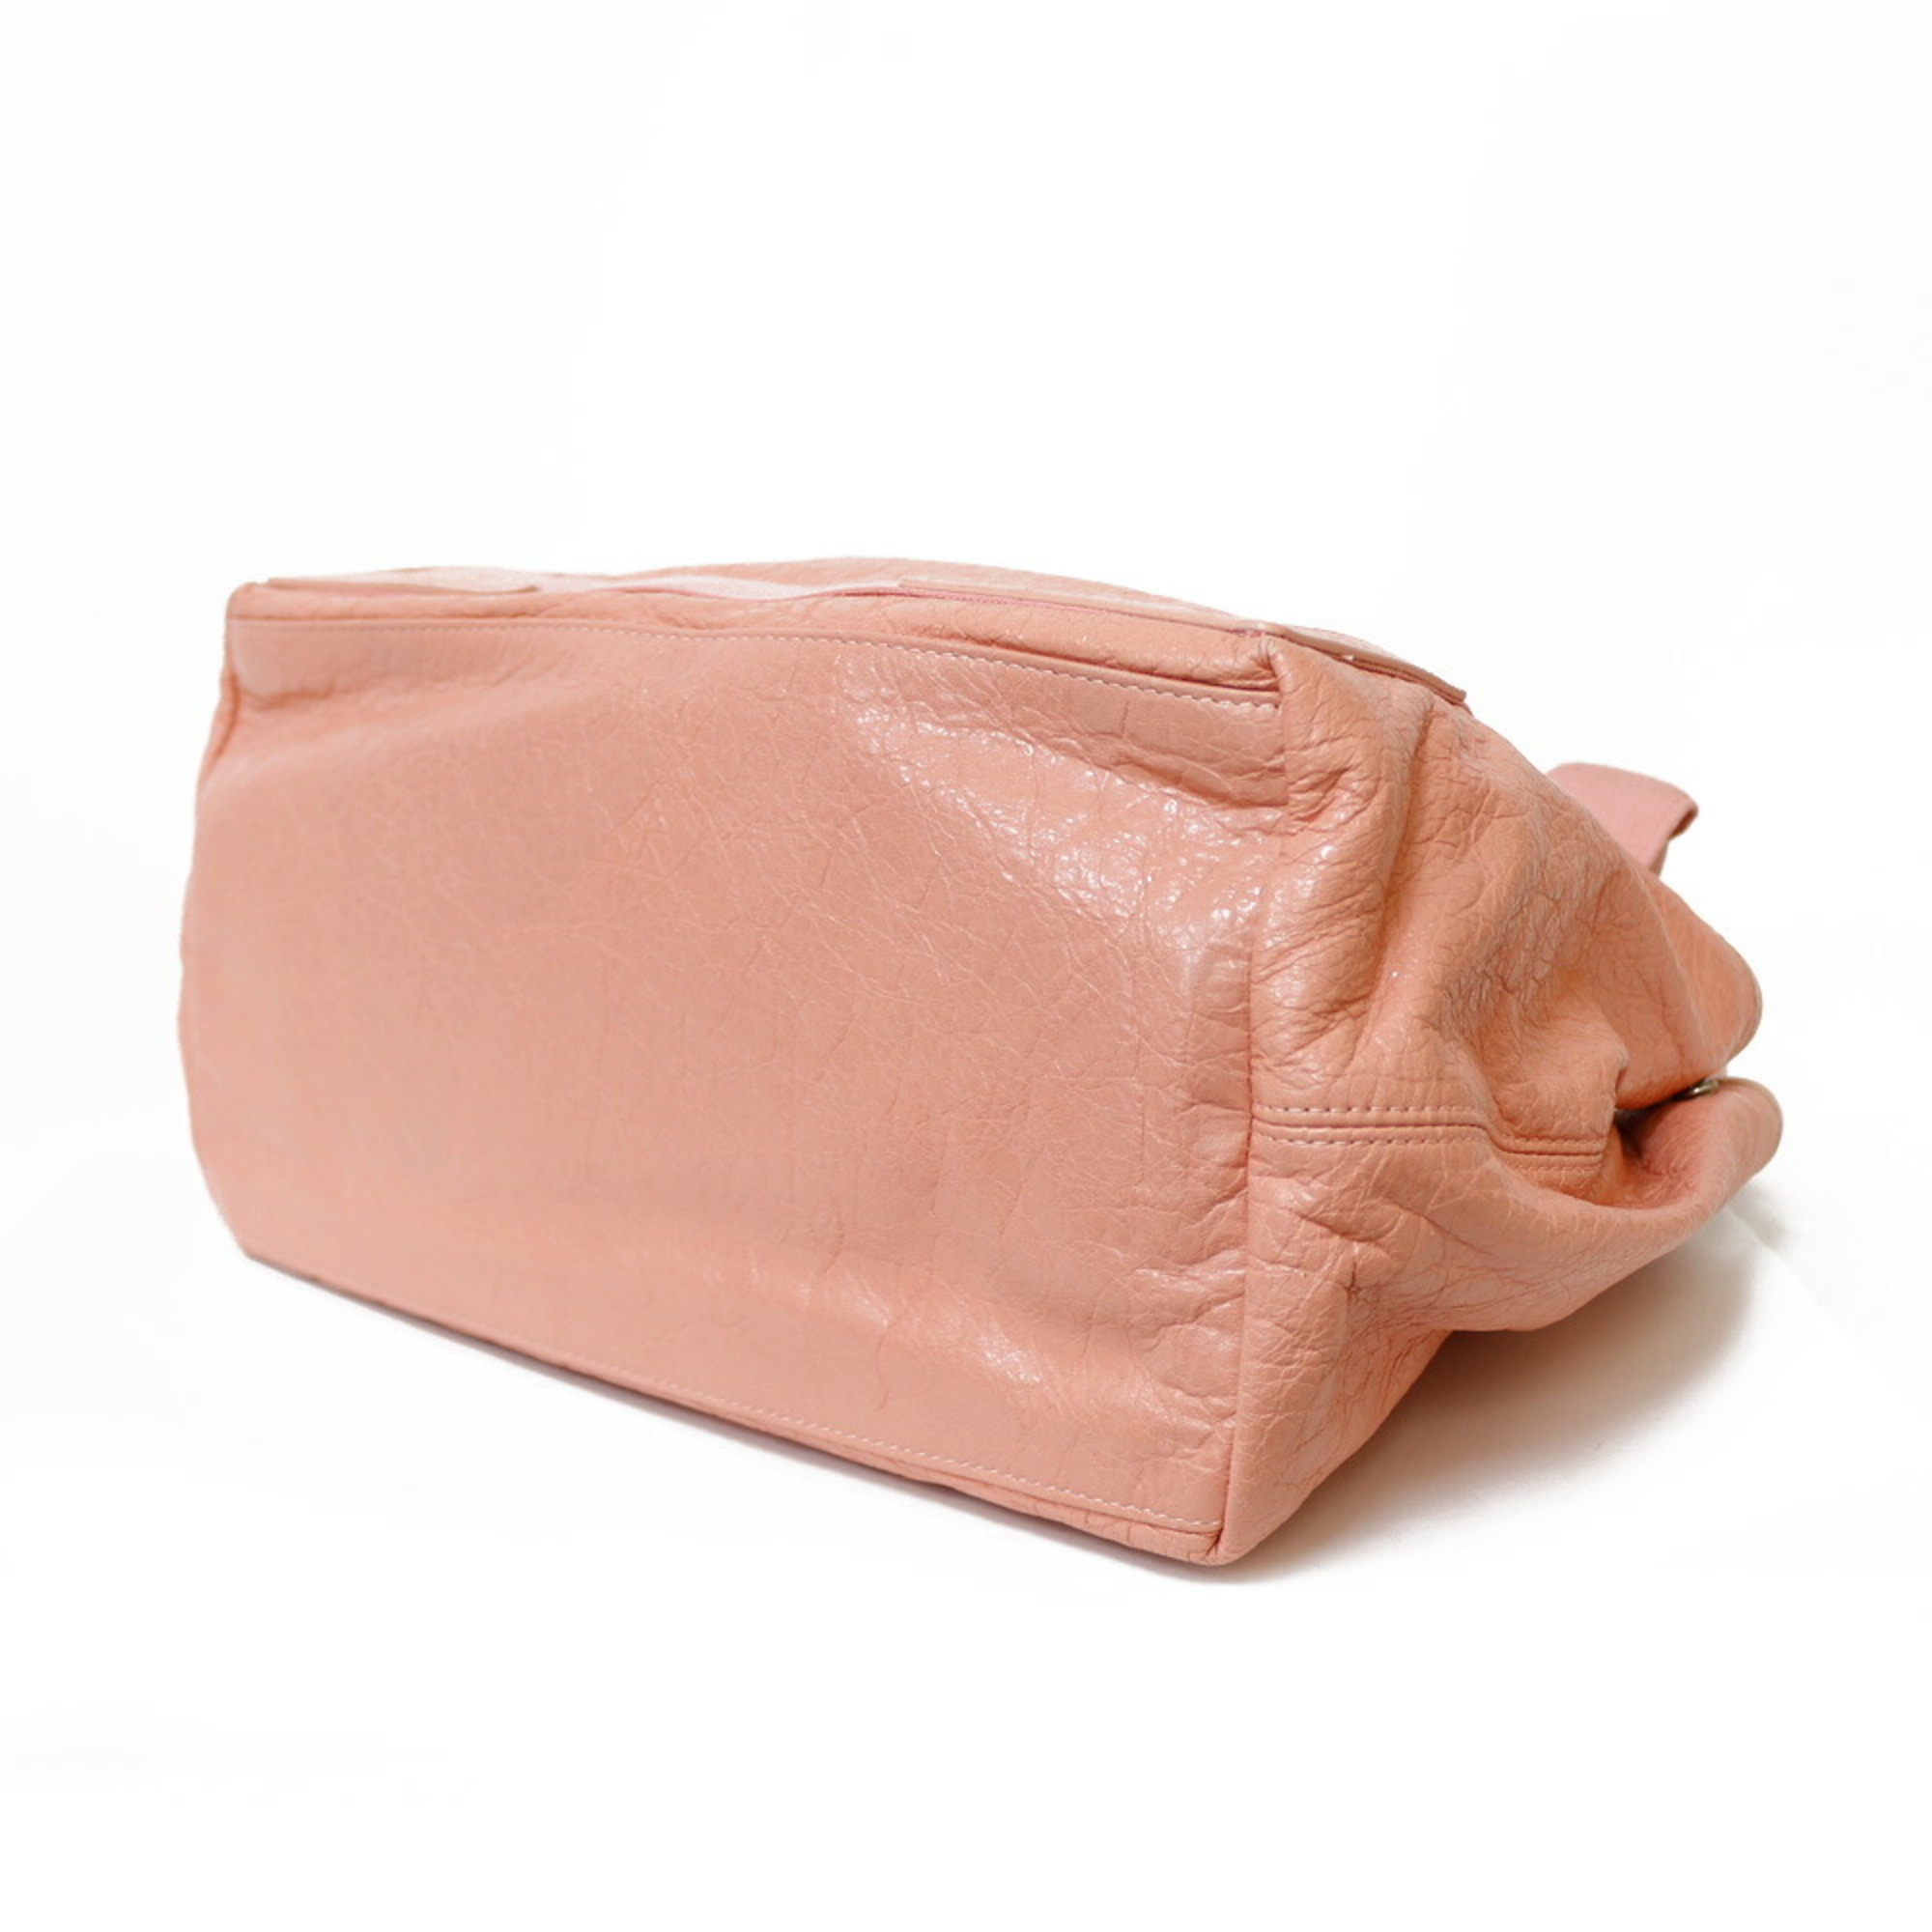 Balenciaga Navy Cabas Handbag Leather Pink Women's BRB01000000002849